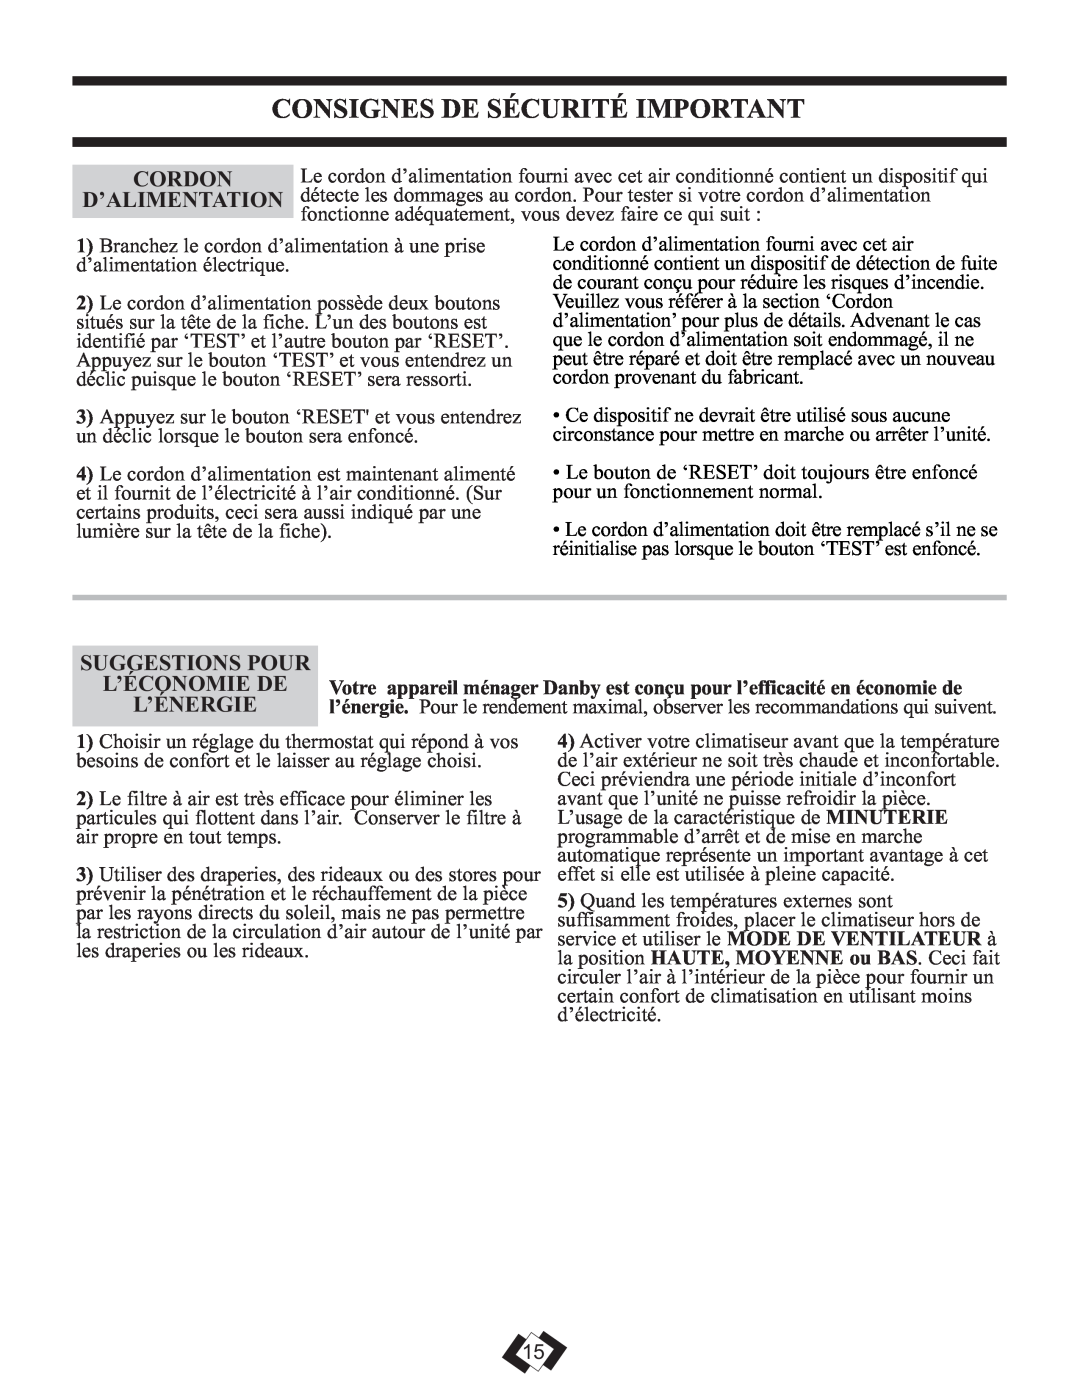 Danby DPAC 12099 manual Consignes De Sécurité Important, Cordon, D’Alimentation, Suggestions Pour, L’Économie De, L’Énergie 